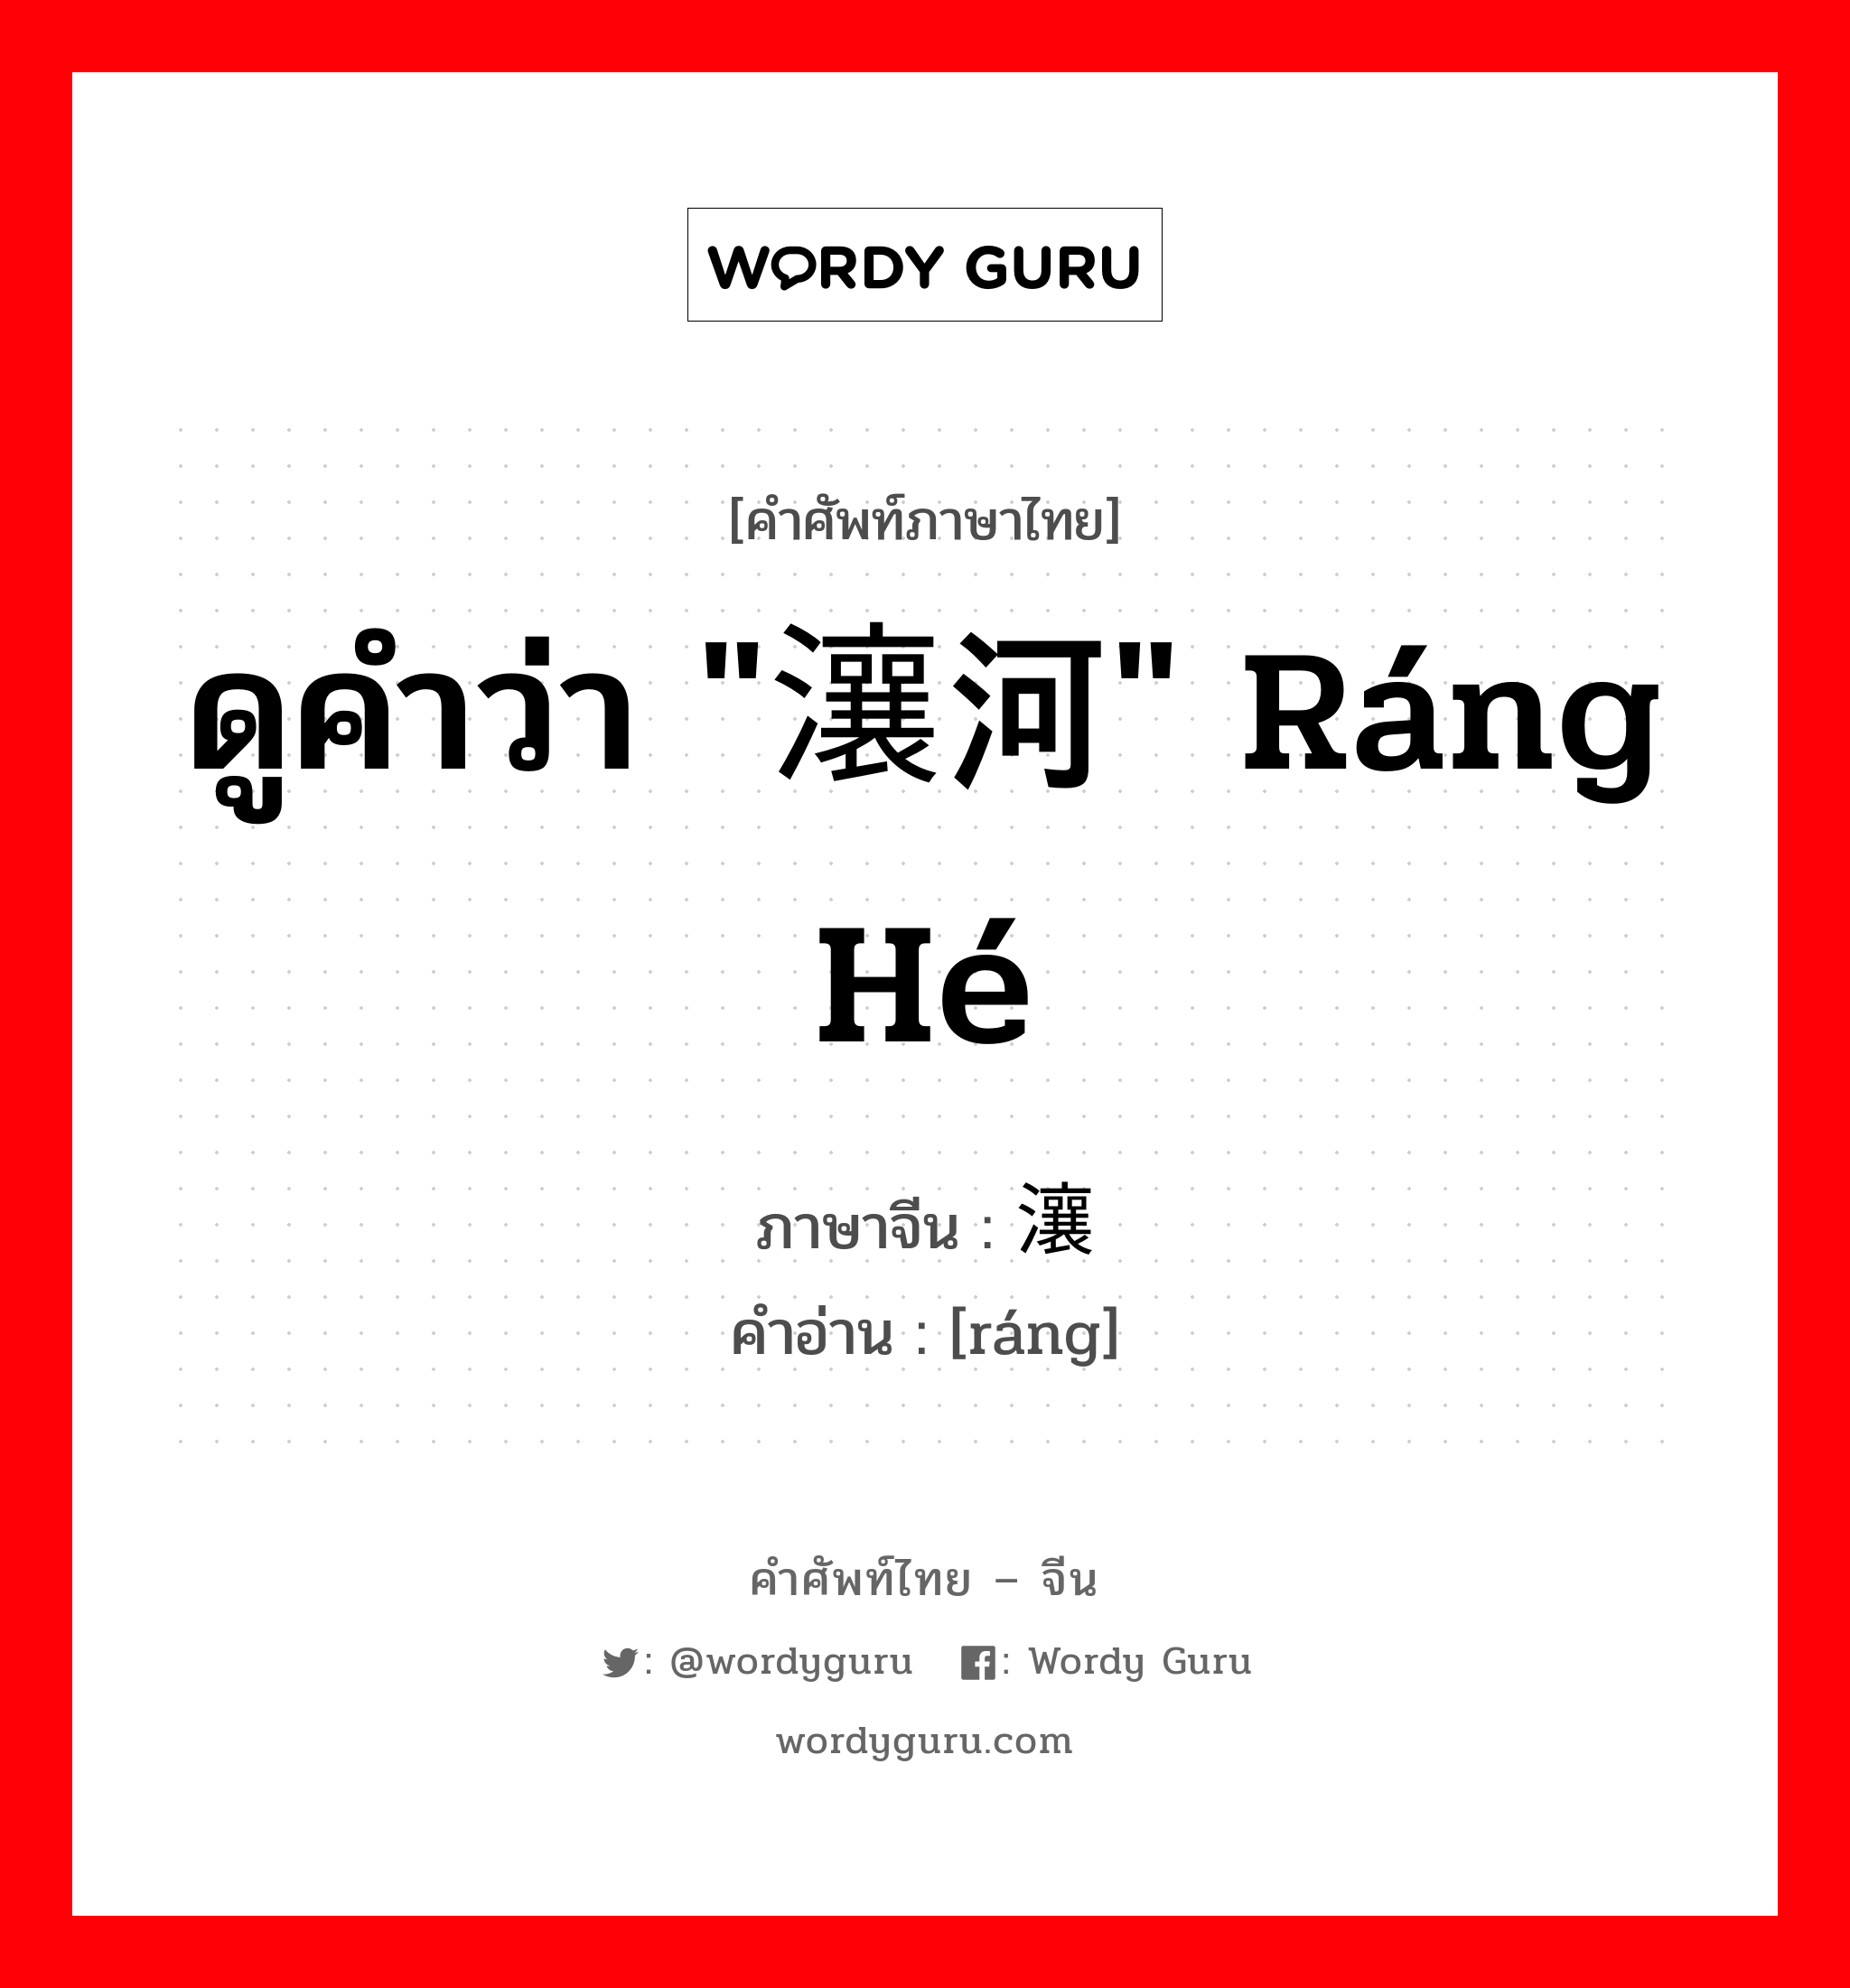 ดูคำว่า "瀼河" ráng hé ภาษาจีนคืออะไร, คำศัพท์ภาษาไทย - จีน ดูคำว่า "瀼河" ráng hé ภาษาจีน 瀼 คำอ่าน [ráng]